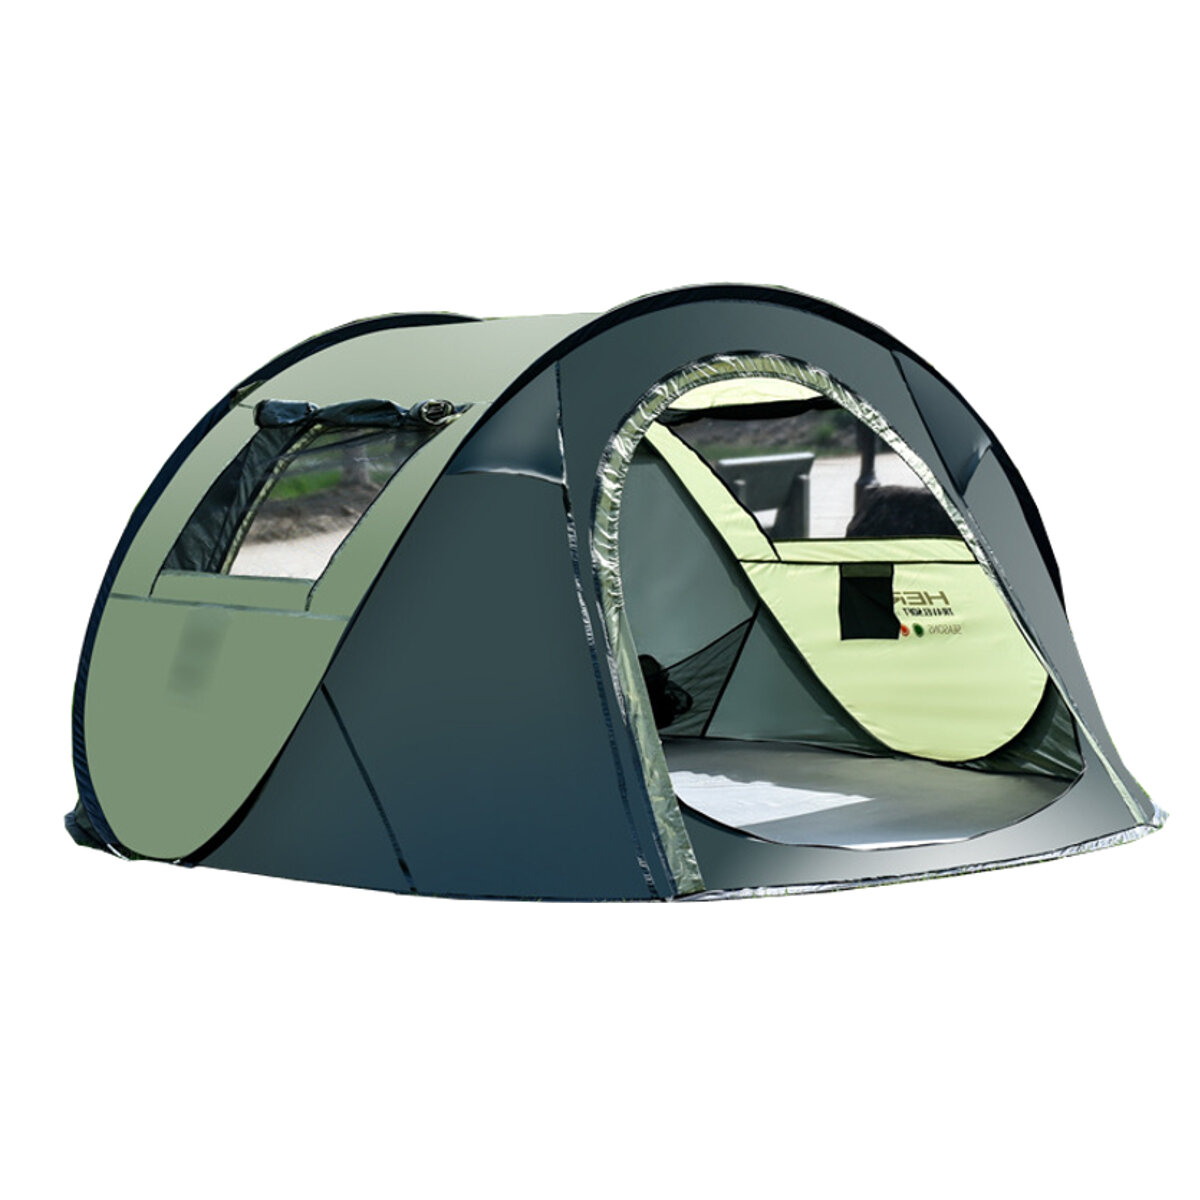 Tente de camping imperméable pour 5-8 personnes, tente automatique à haute vitesse pour voyages et randonnées en plein air - café/vert